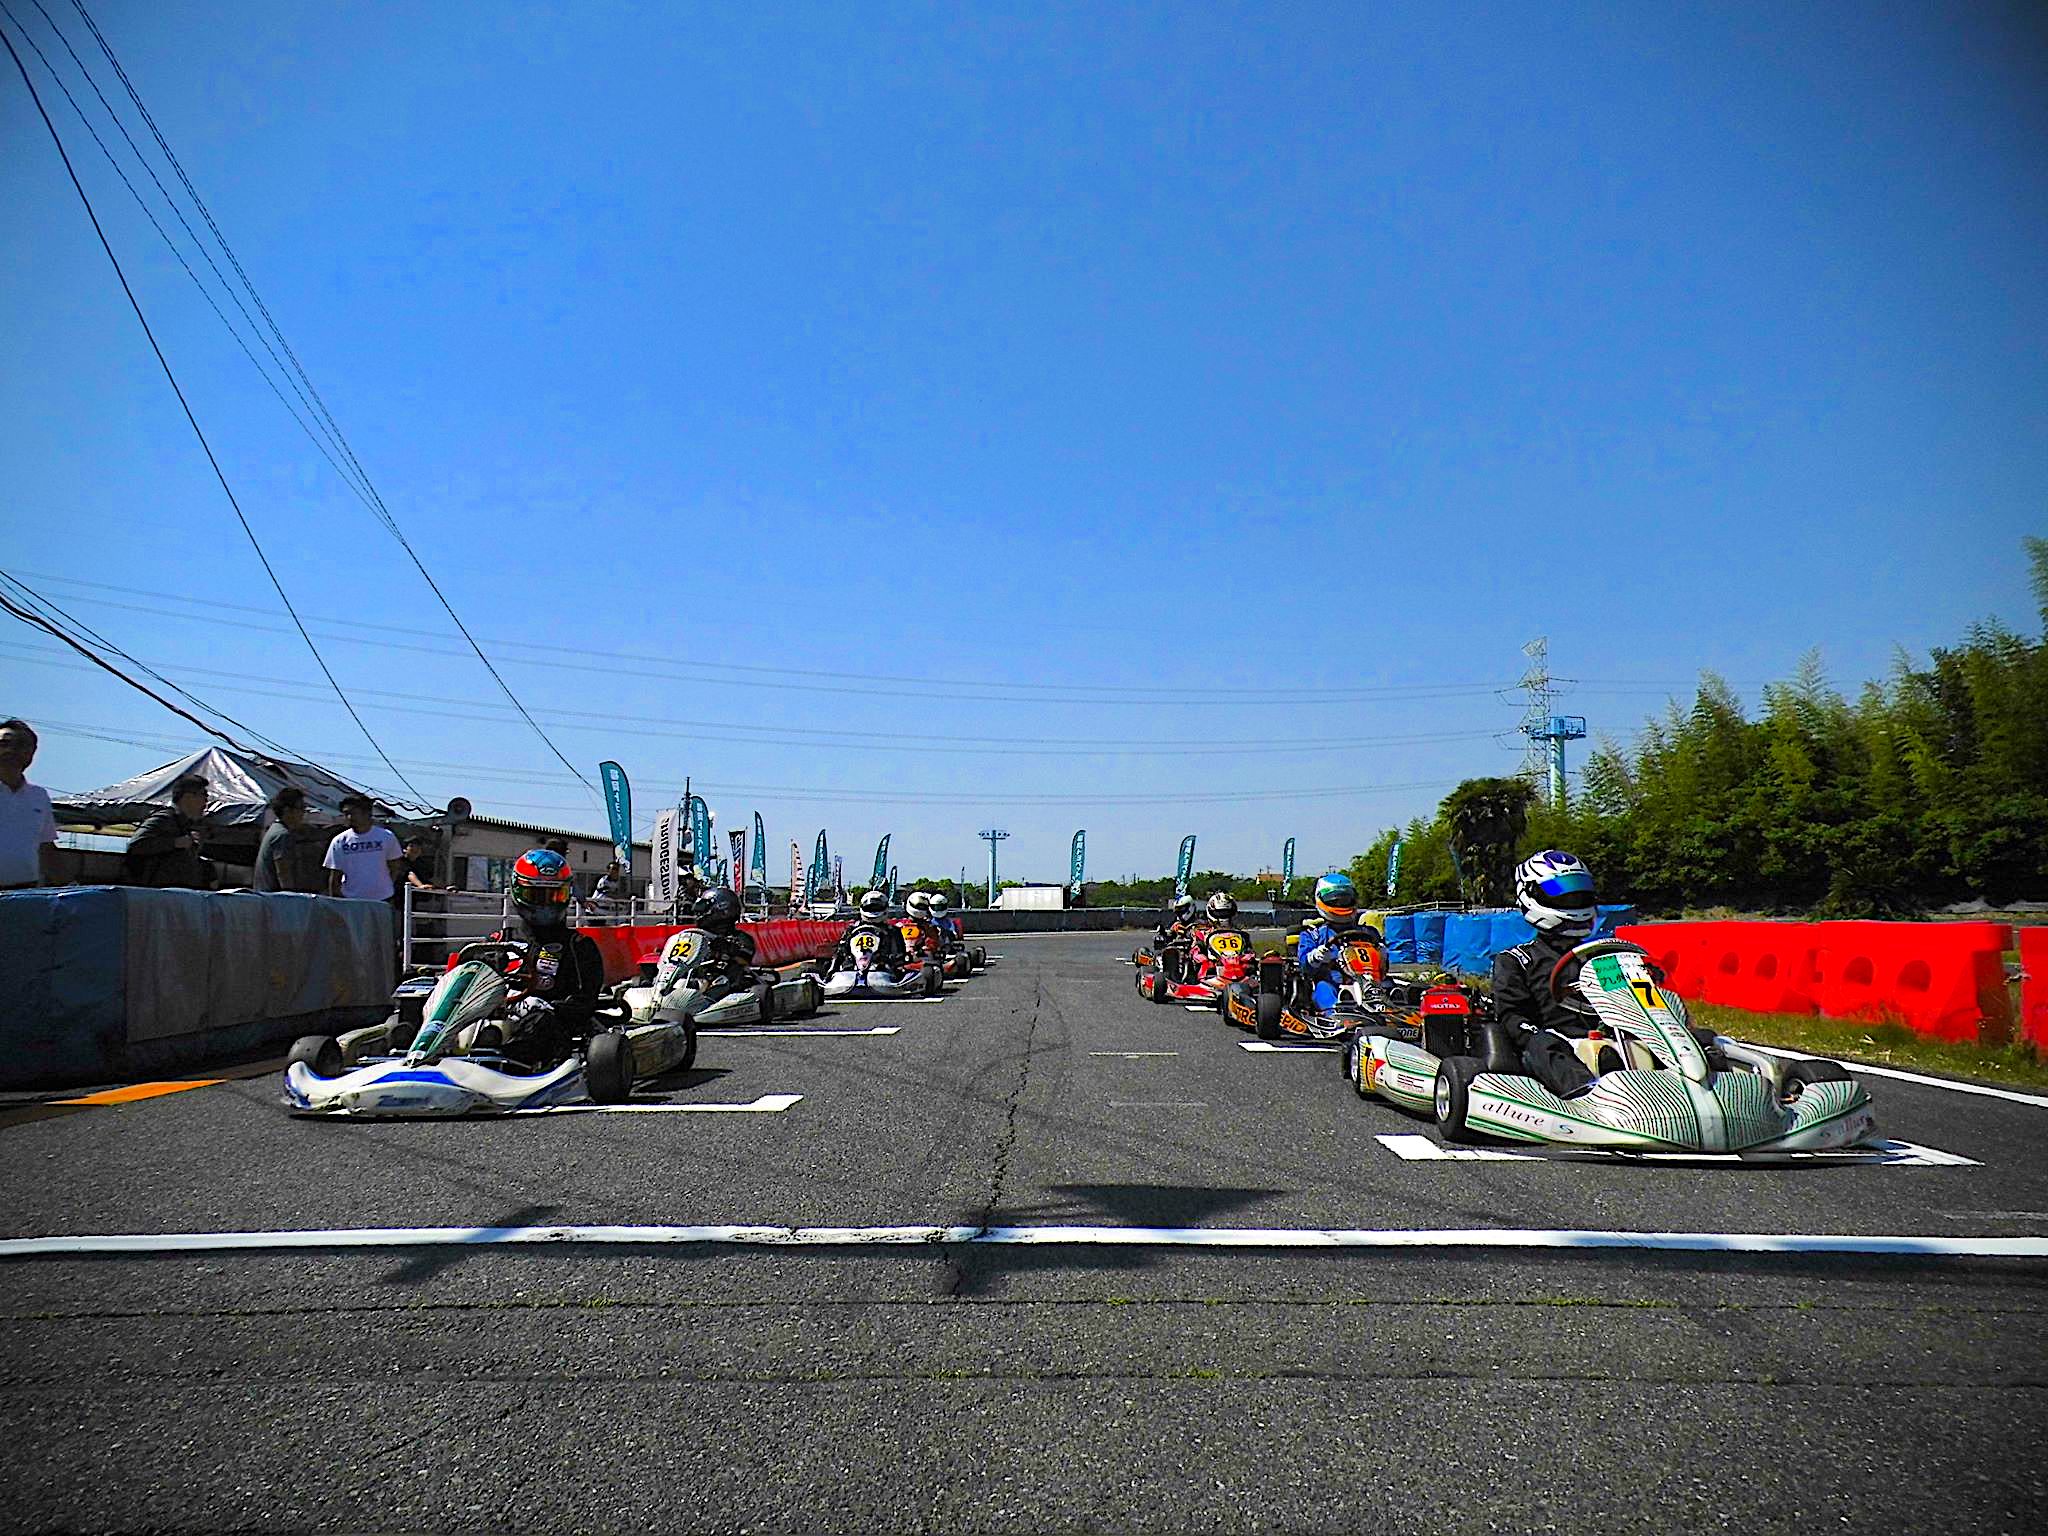 Aoneサーキット 福岡県の本格カートコース レンタルカート